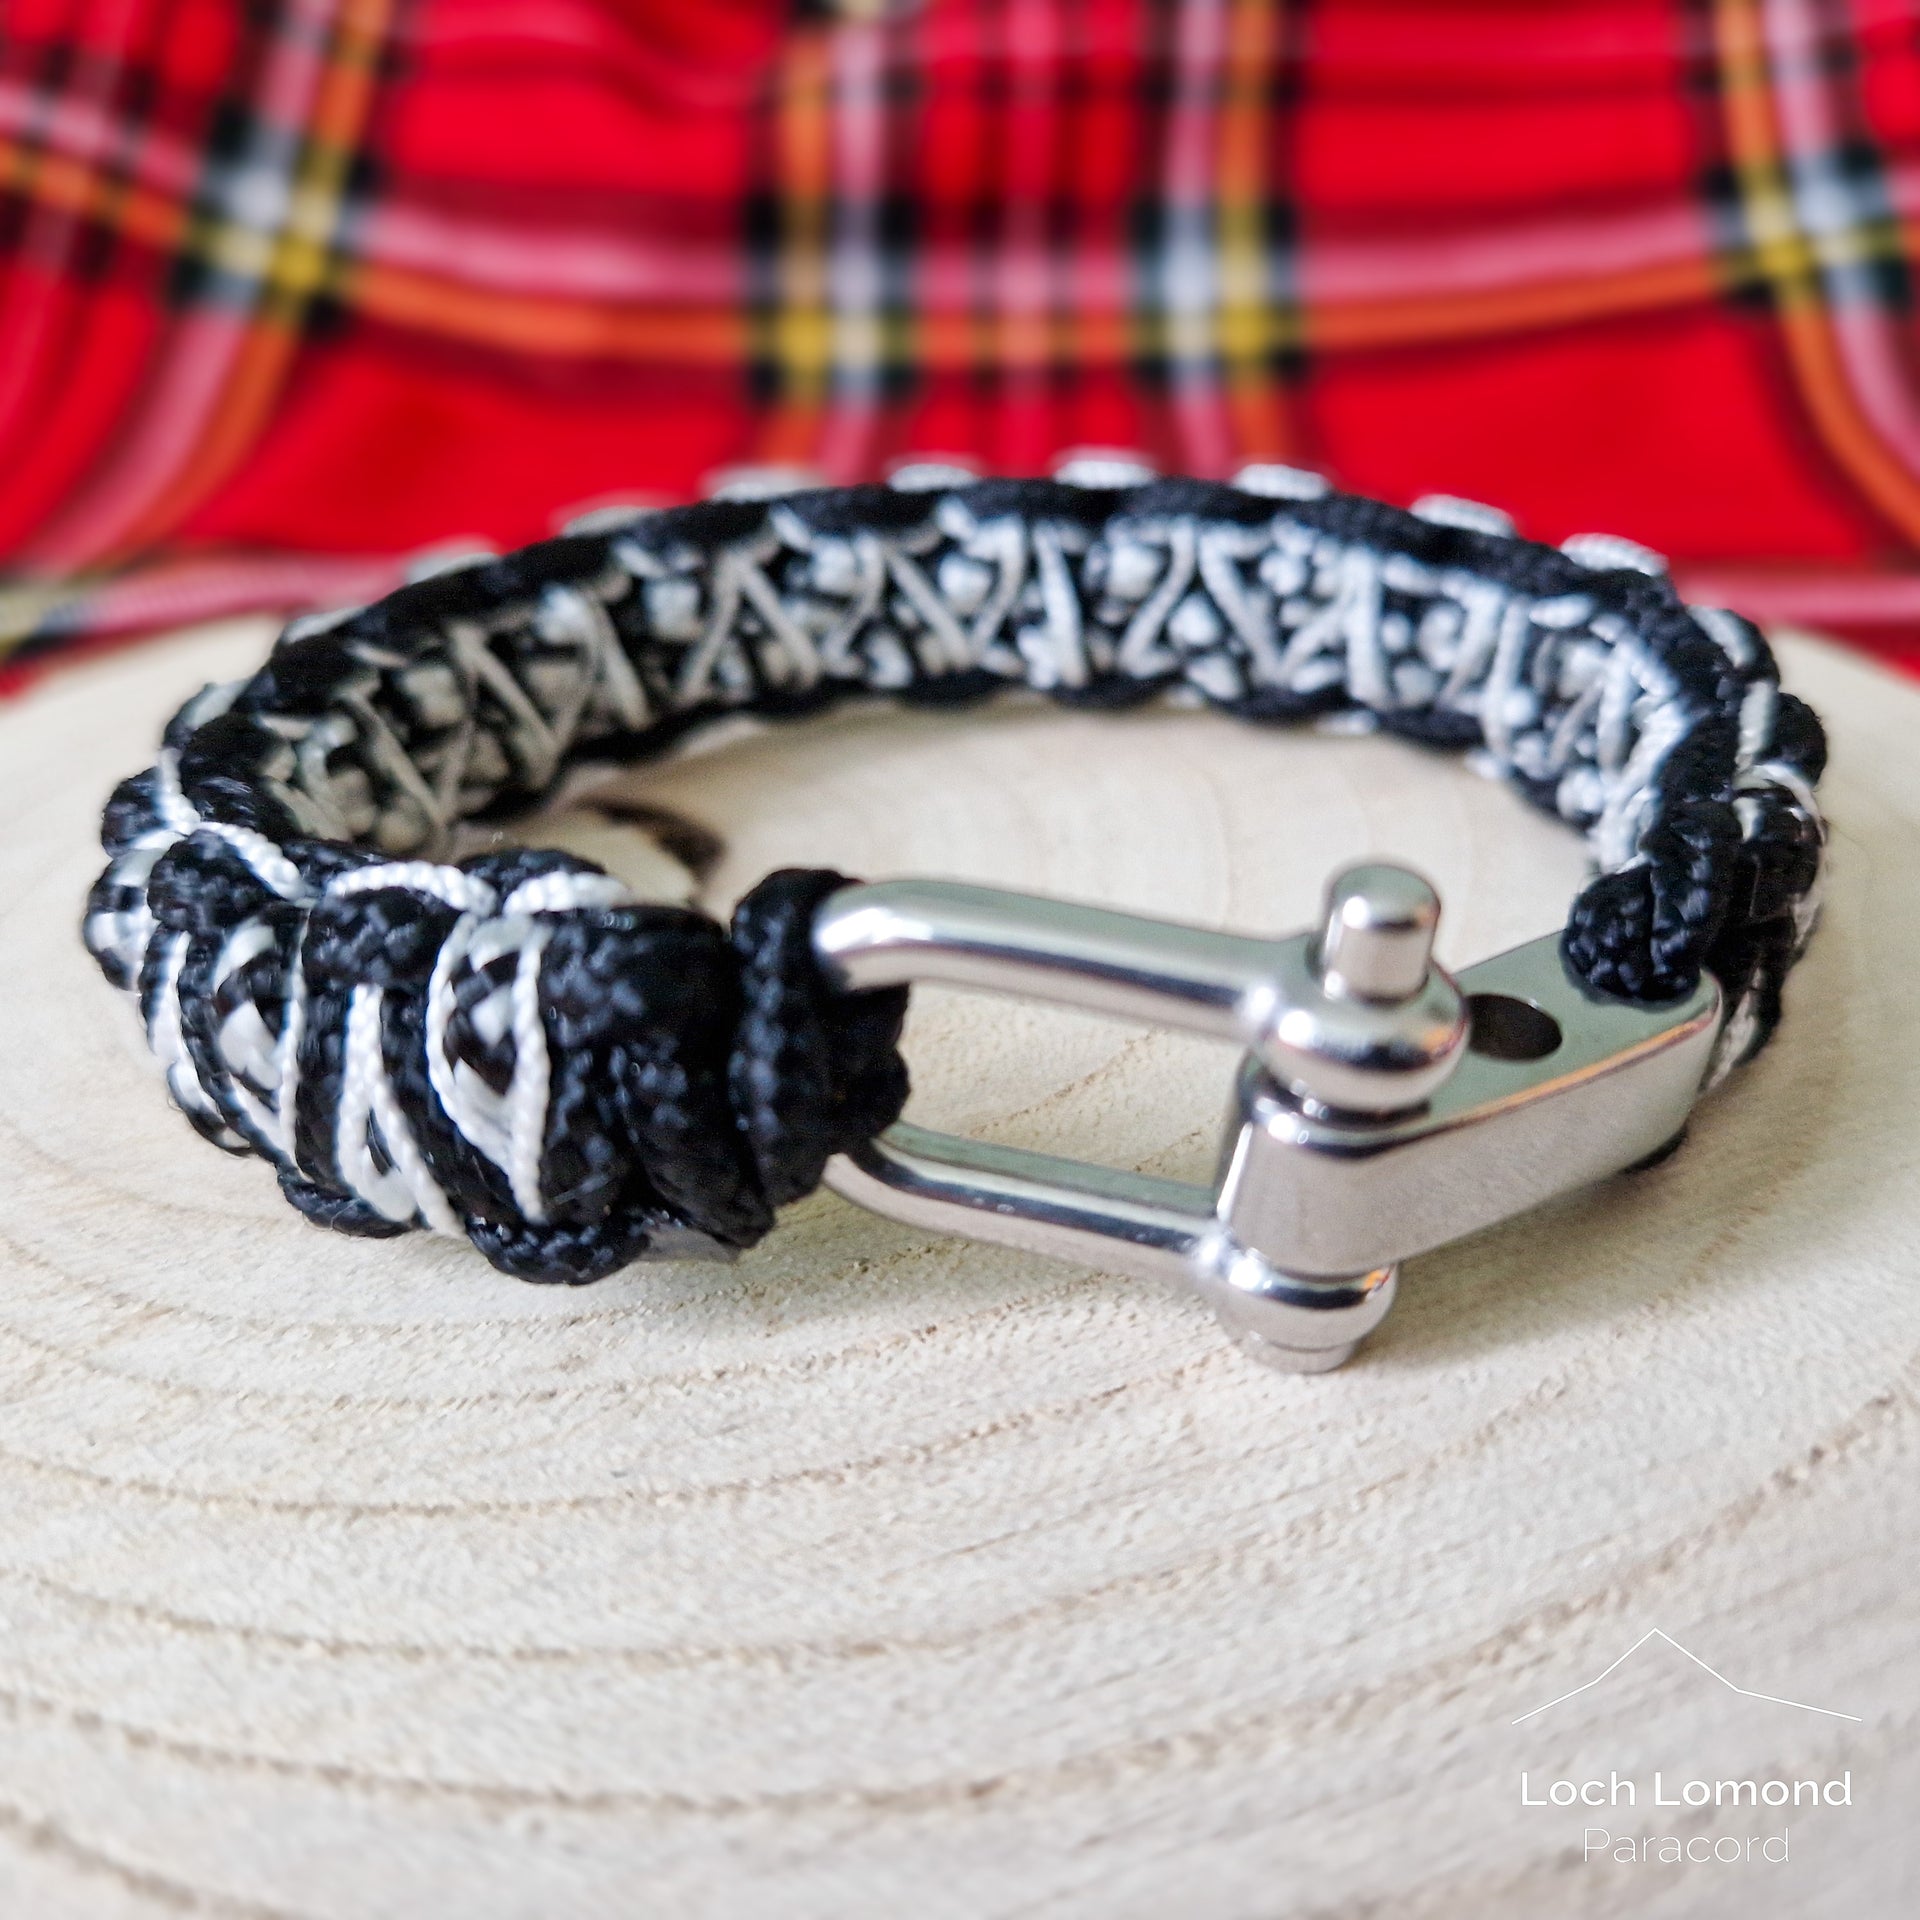 Mini Stitched Solomon's Dragon Bracelet – Loch Lomond Paracord